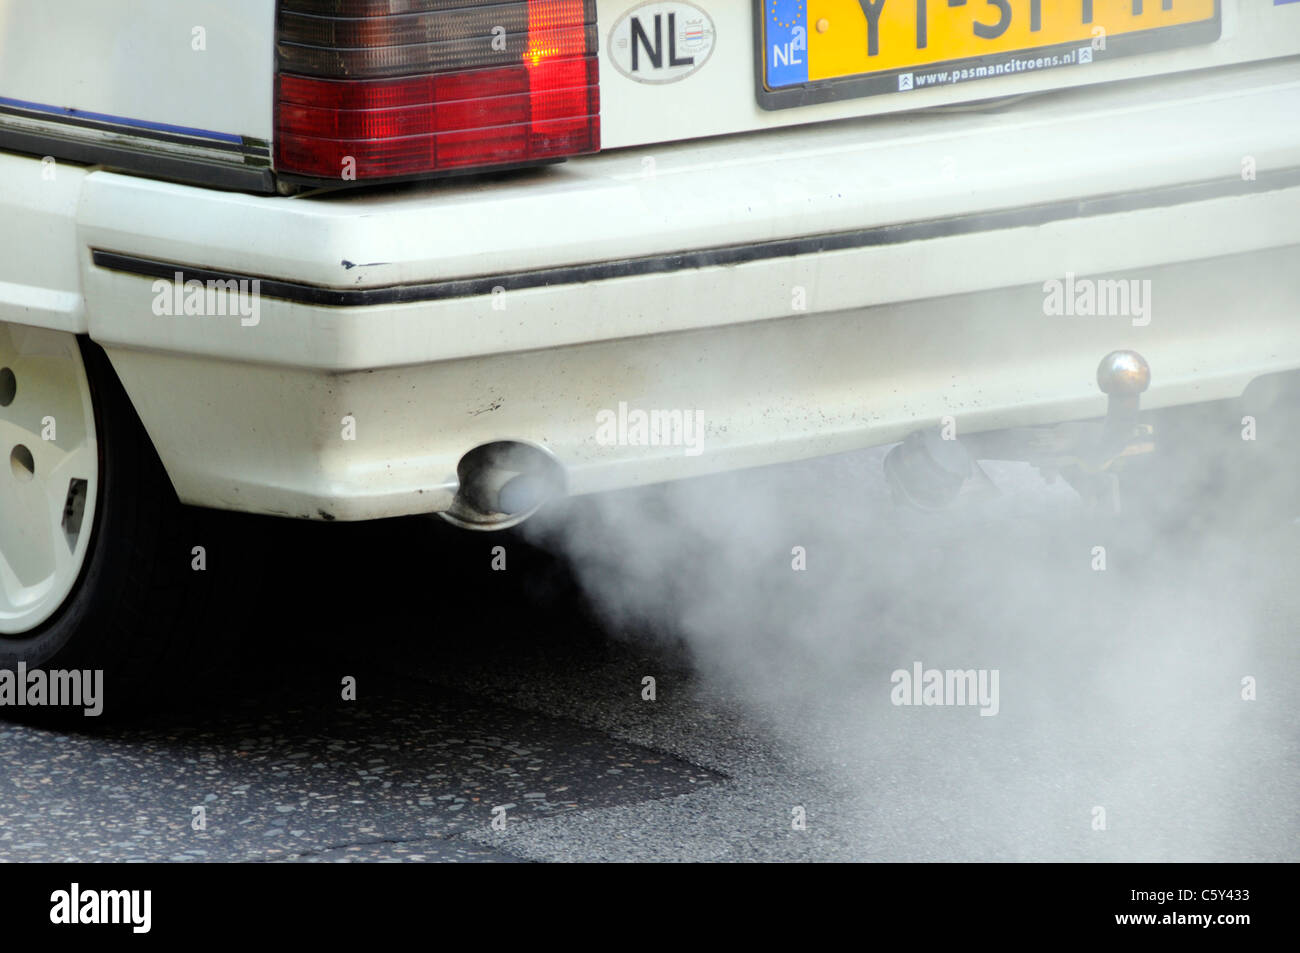 Gros plan d'une vieille voiture Citroën immatriculée aux pays-Bas et présentant un système d'échappement polluant défectueux. Émanations nuisibles à l'environnement. Conduite sur la route Park Lane London UK Banque D'Images